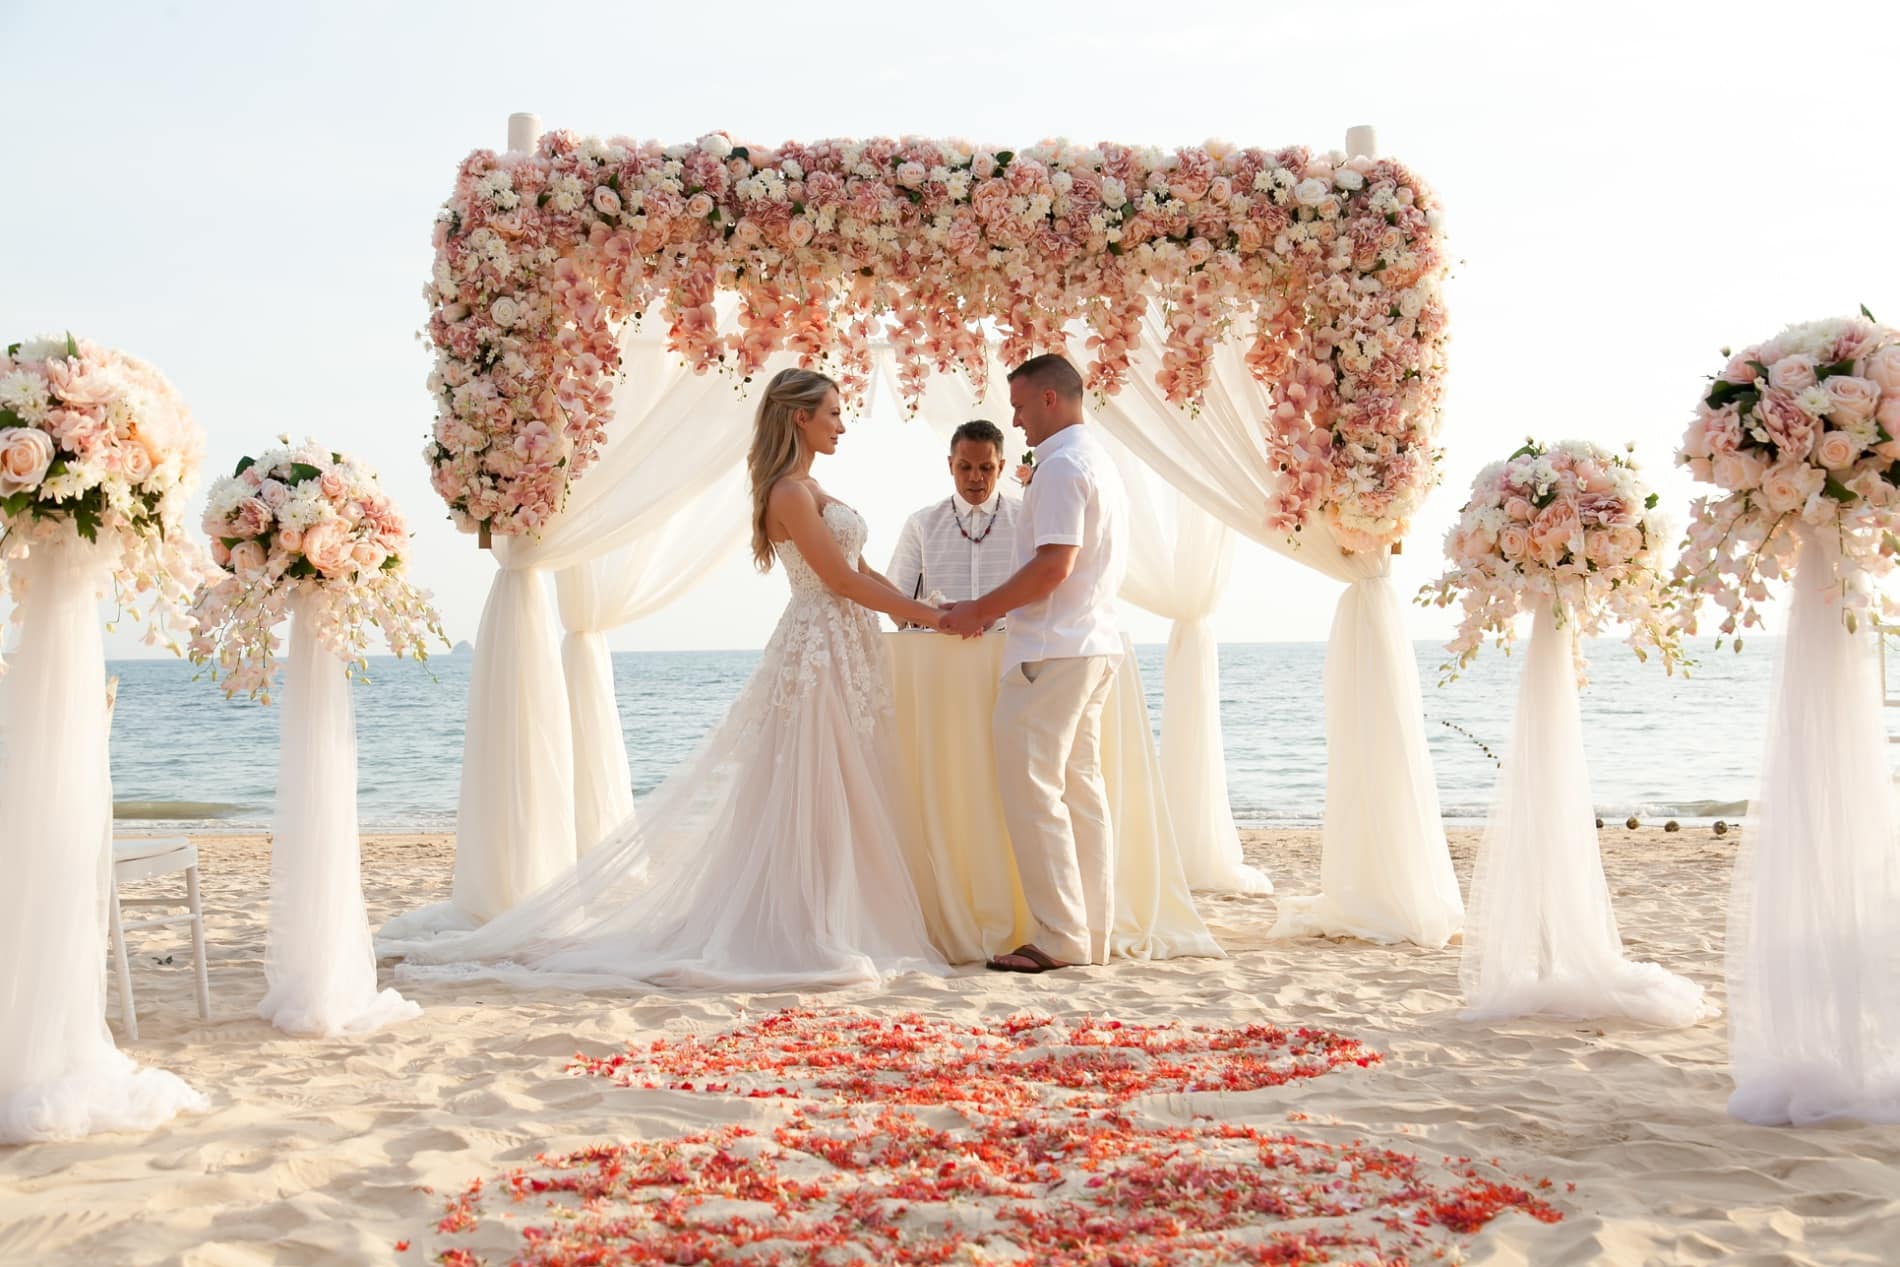 A Dream Beach Elopement Wedding in Thailand - Destination Wedding